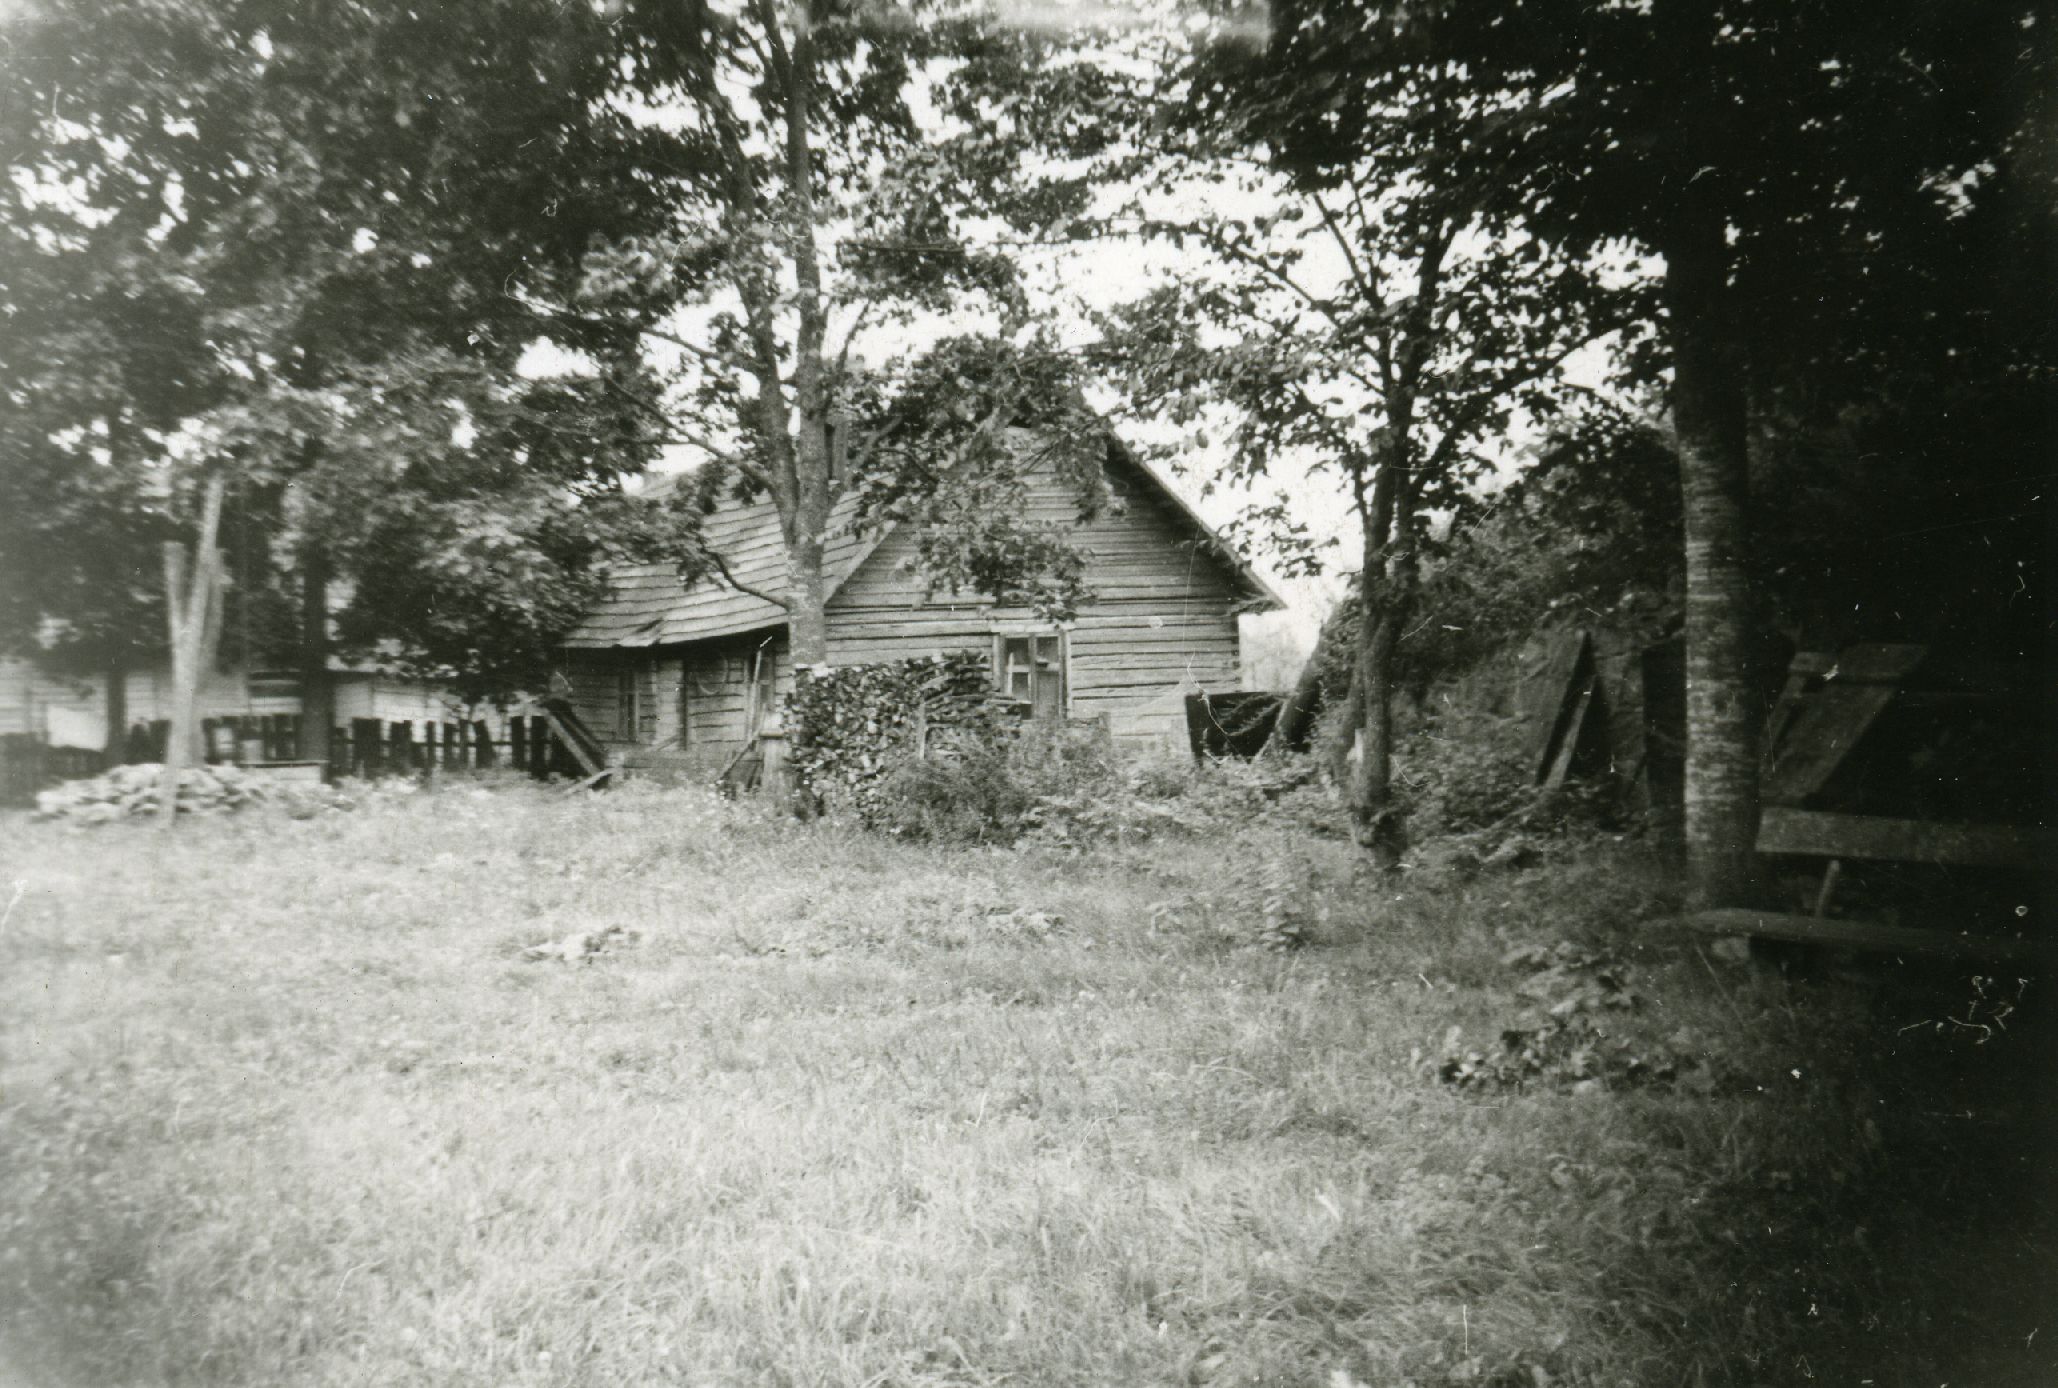 (Karl Ristikivi) Paadremaa Võips farm buildings in 1966.